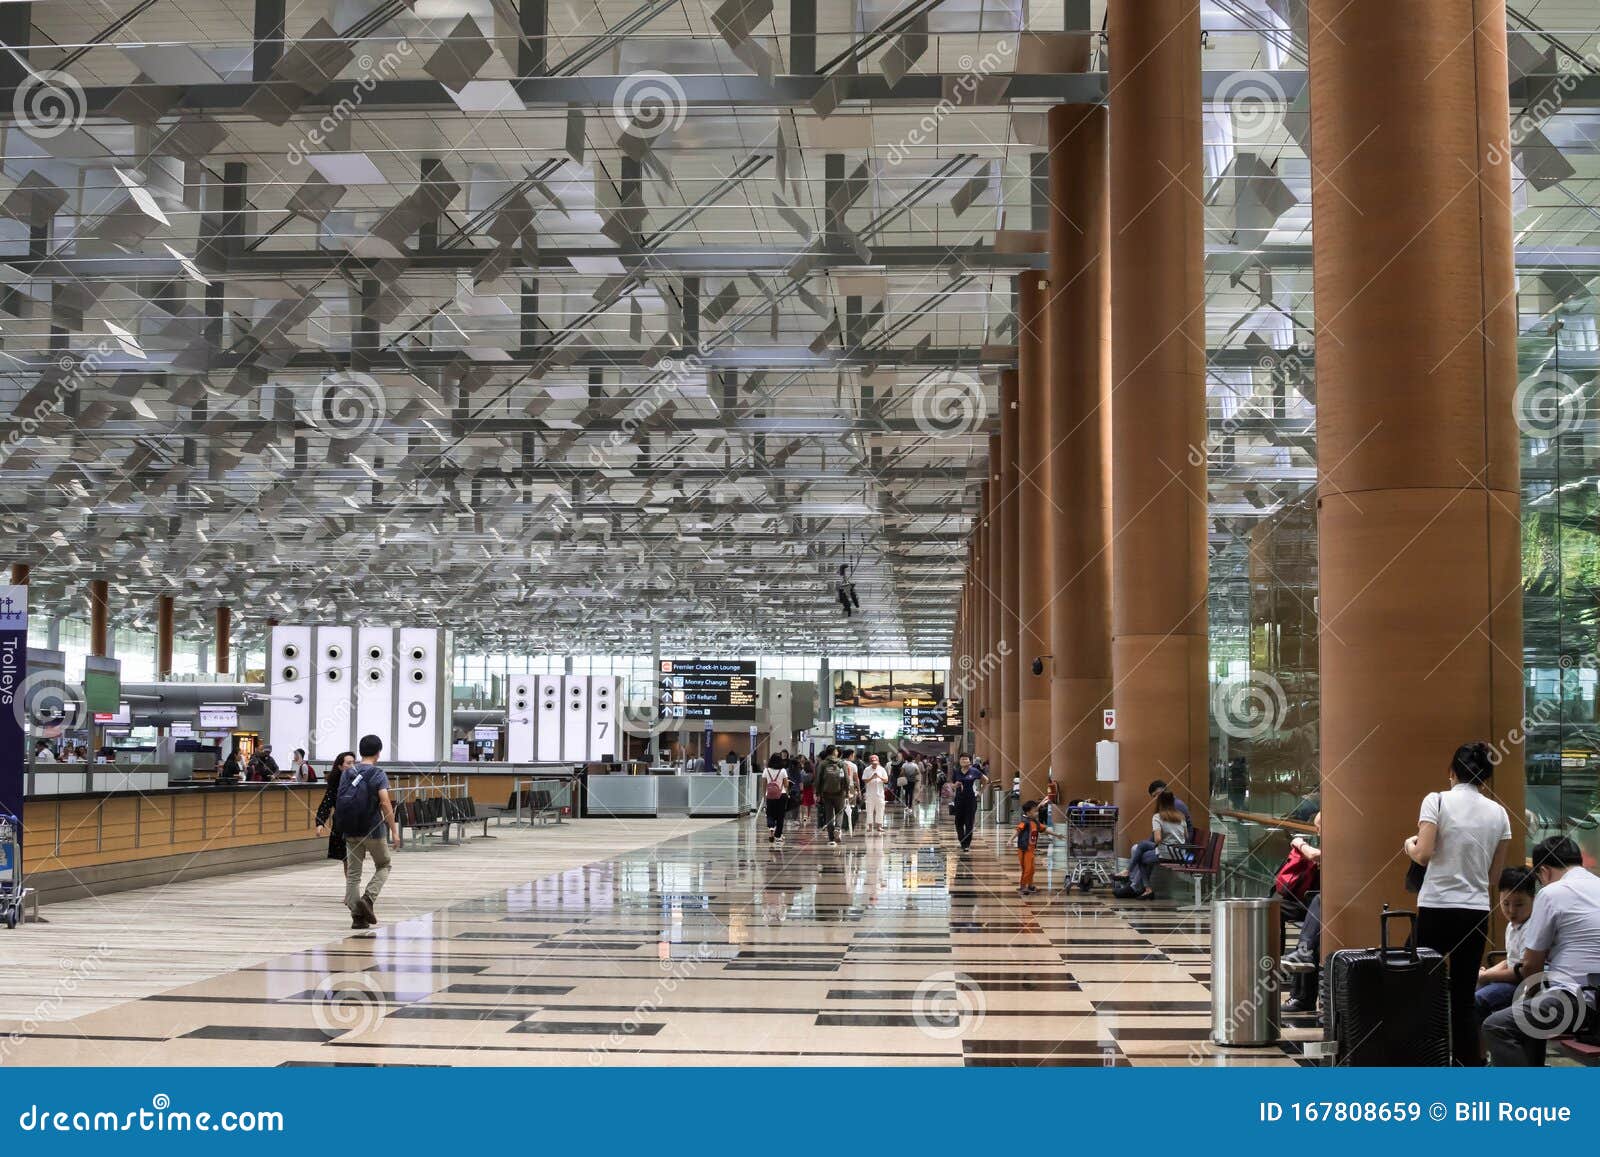 新加坡 新加坡 19年12月28日 新加坡樟宜机场3号候机楼离港大厅 办理入港手续编辑类库存图片 图片包括有乘客 旅行家